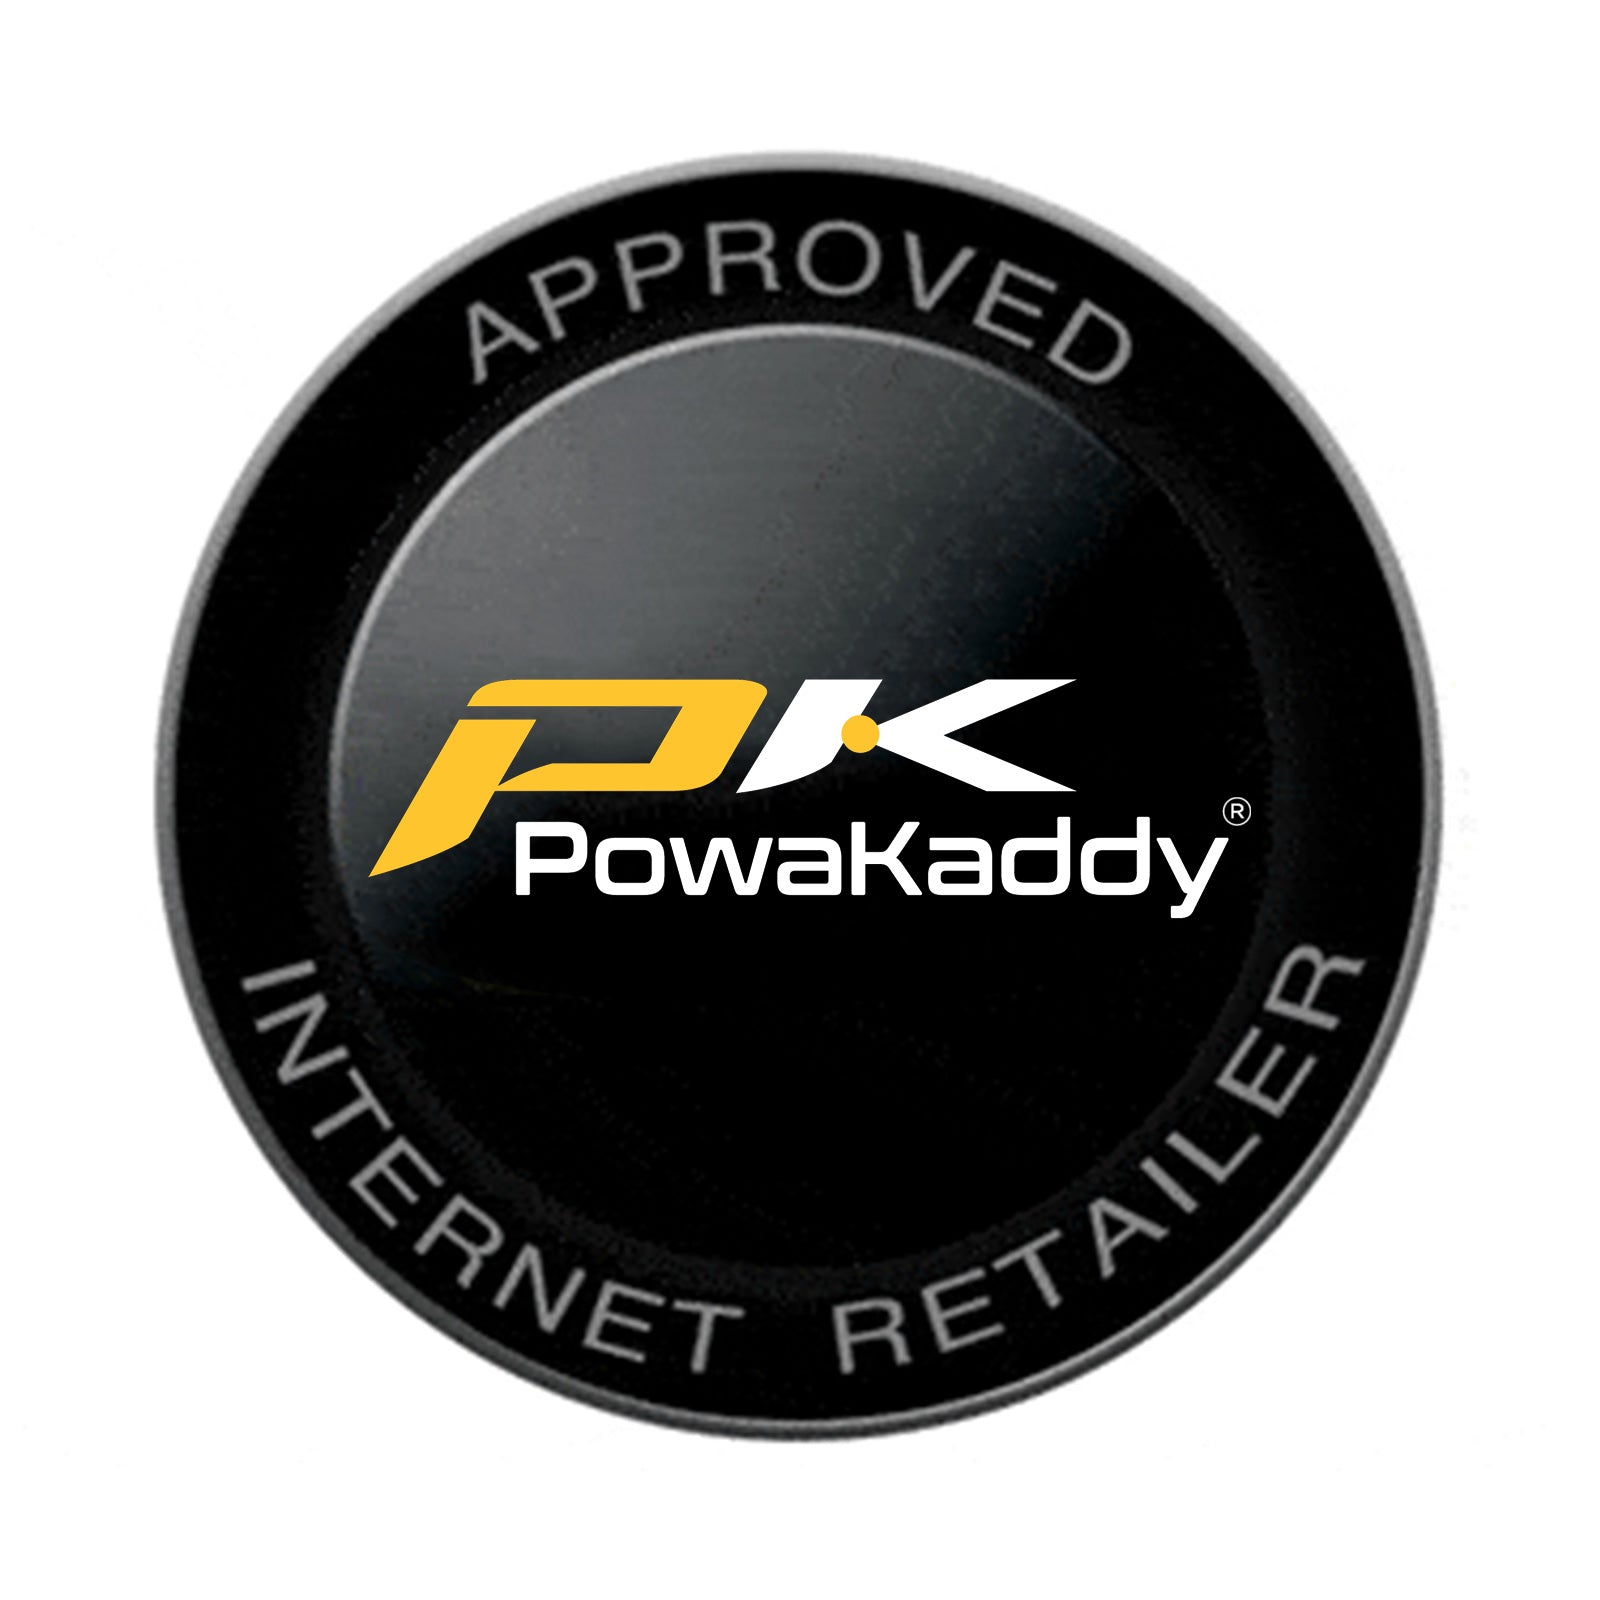 PowaKaddy FX5 Electric Golf Trolley